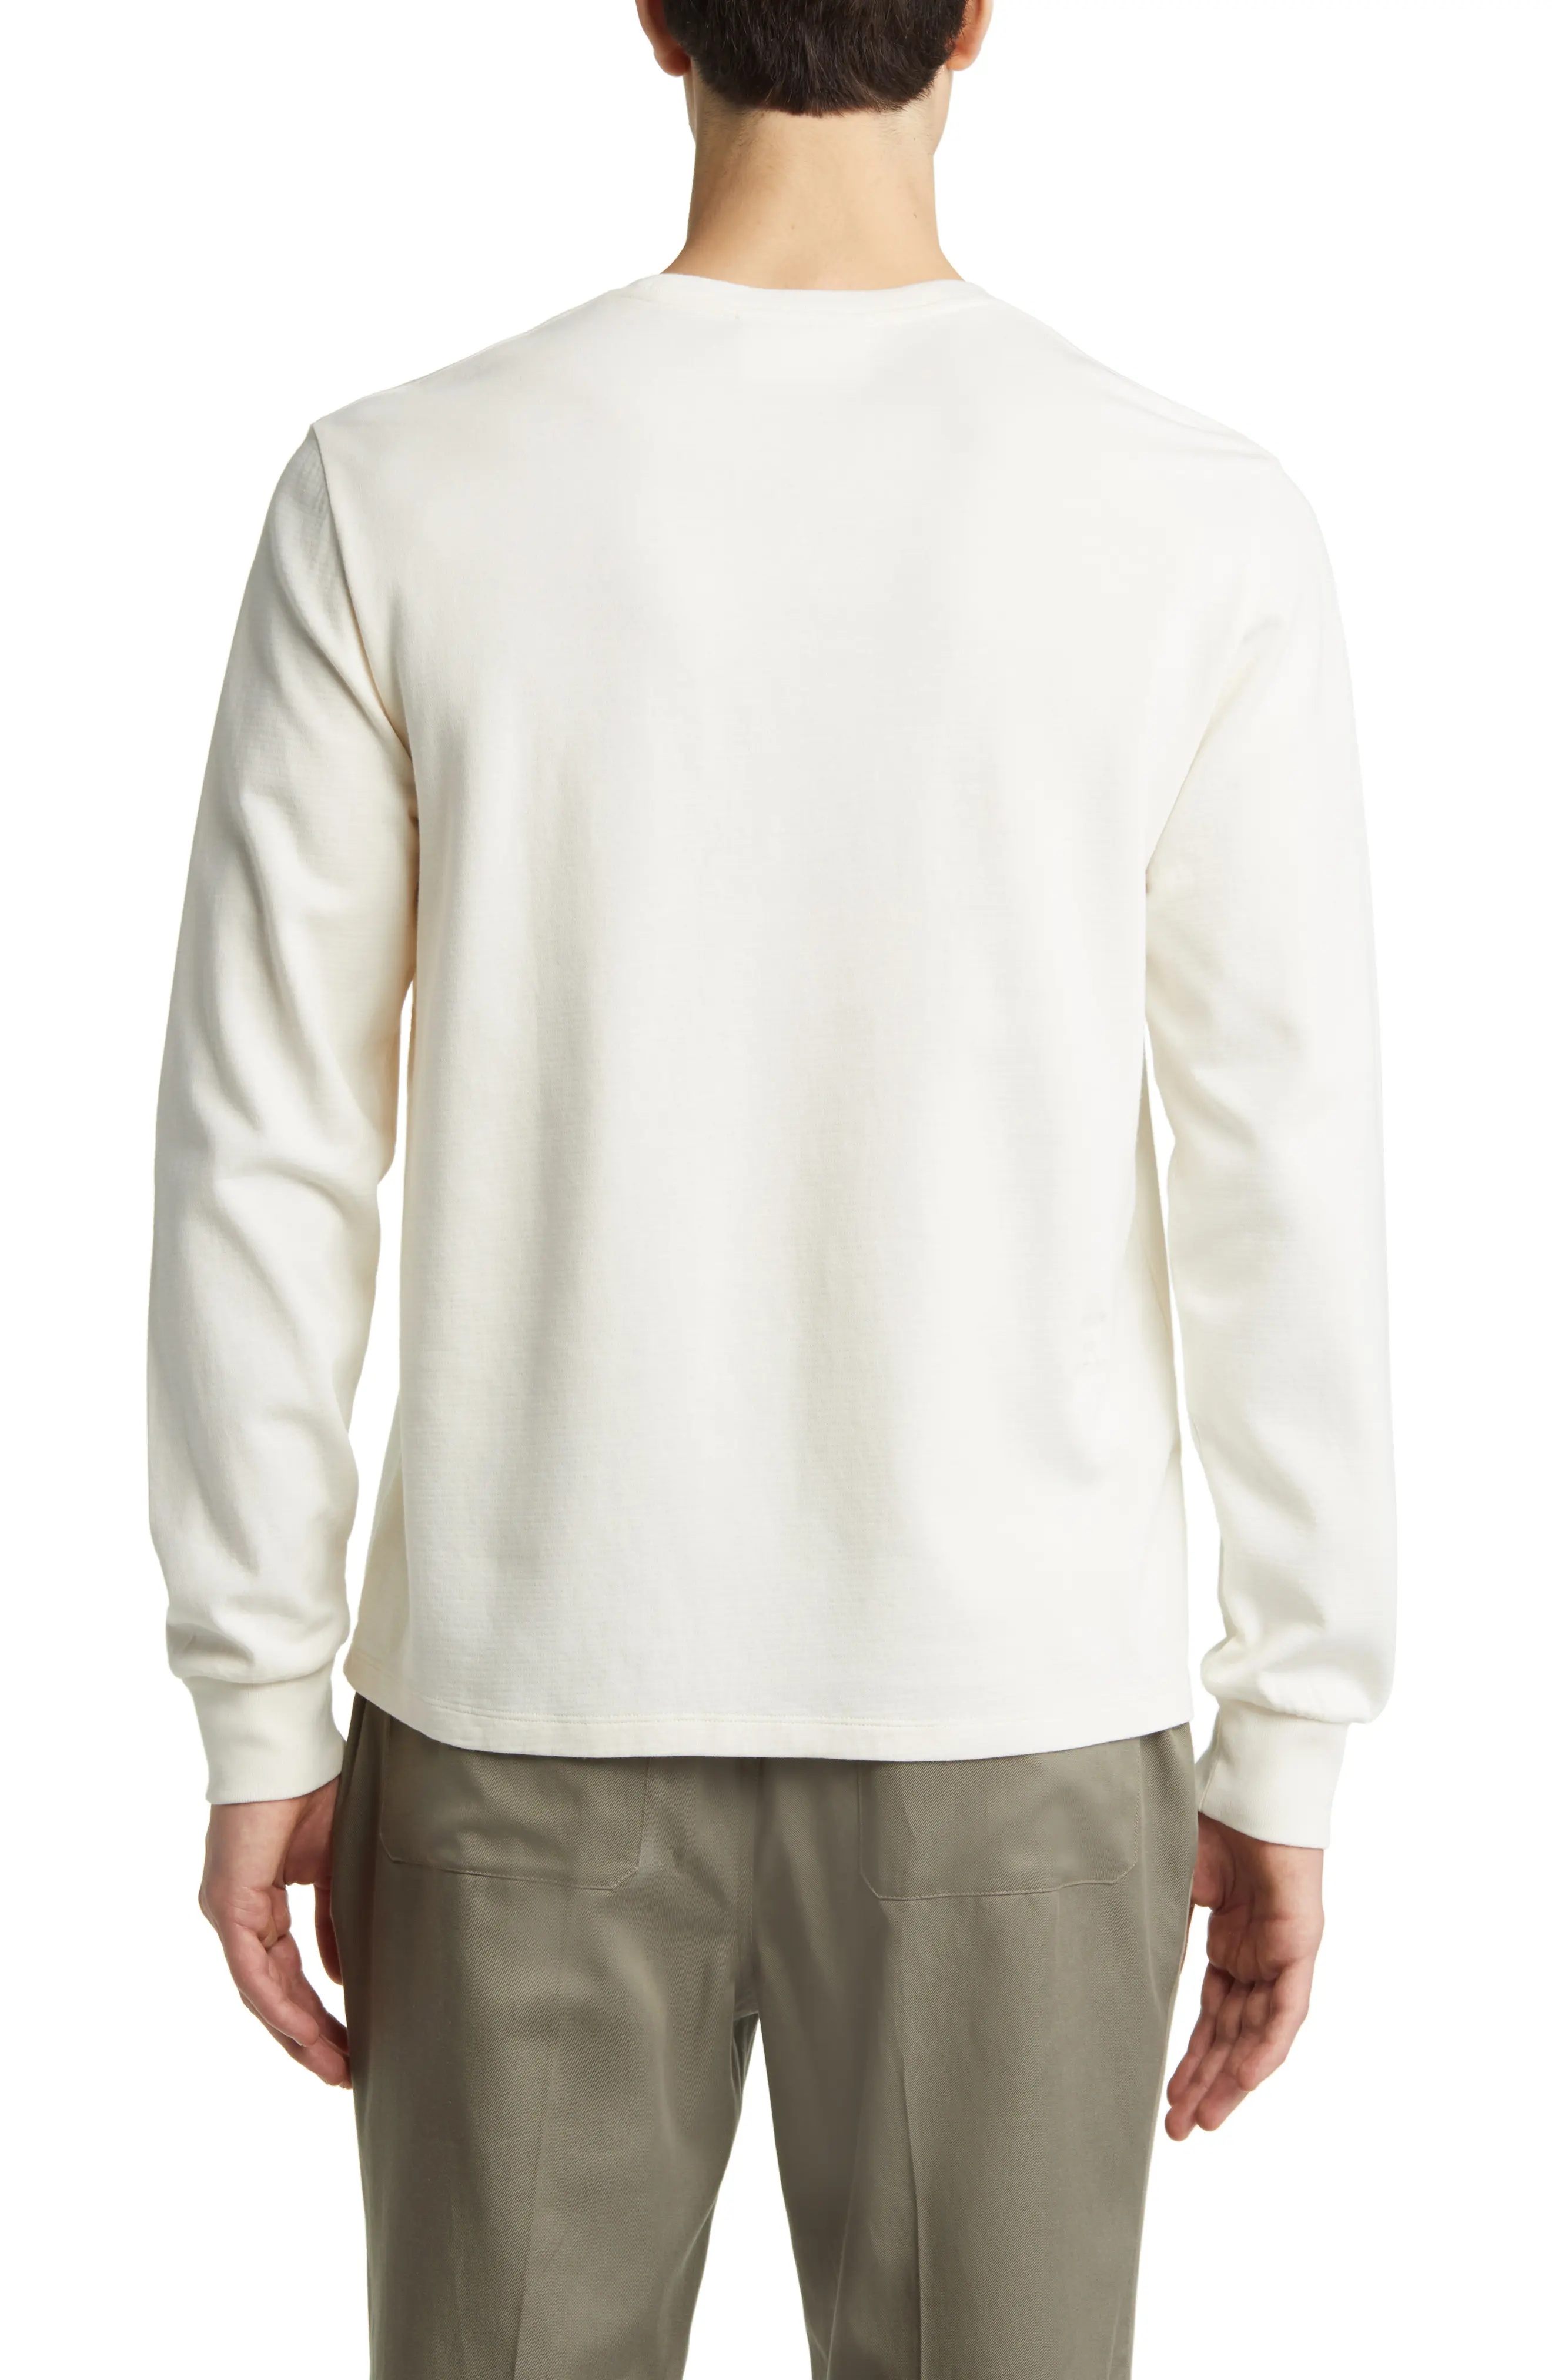 Duo Fold Long Sleeve Cotton T-Shirt - 2